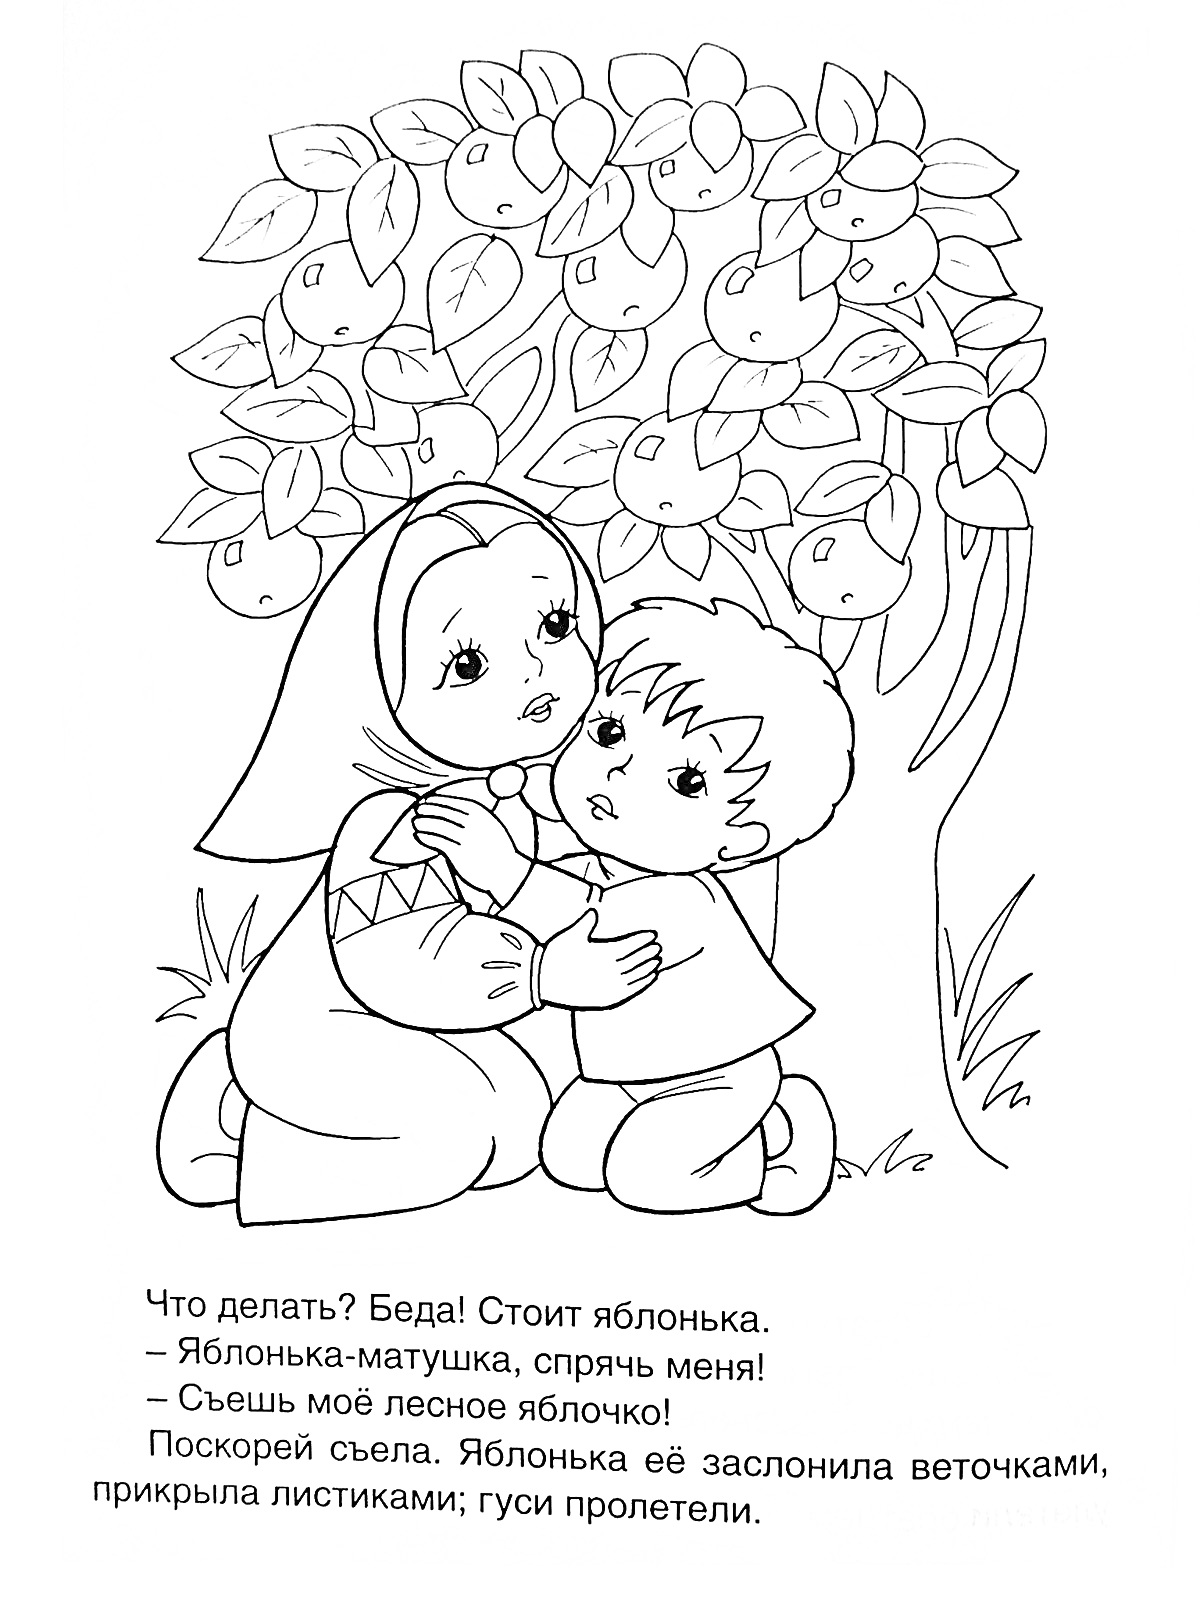 Раскраска девочка и мальчик прячутся под яблоней с яблоками, вокруг трава